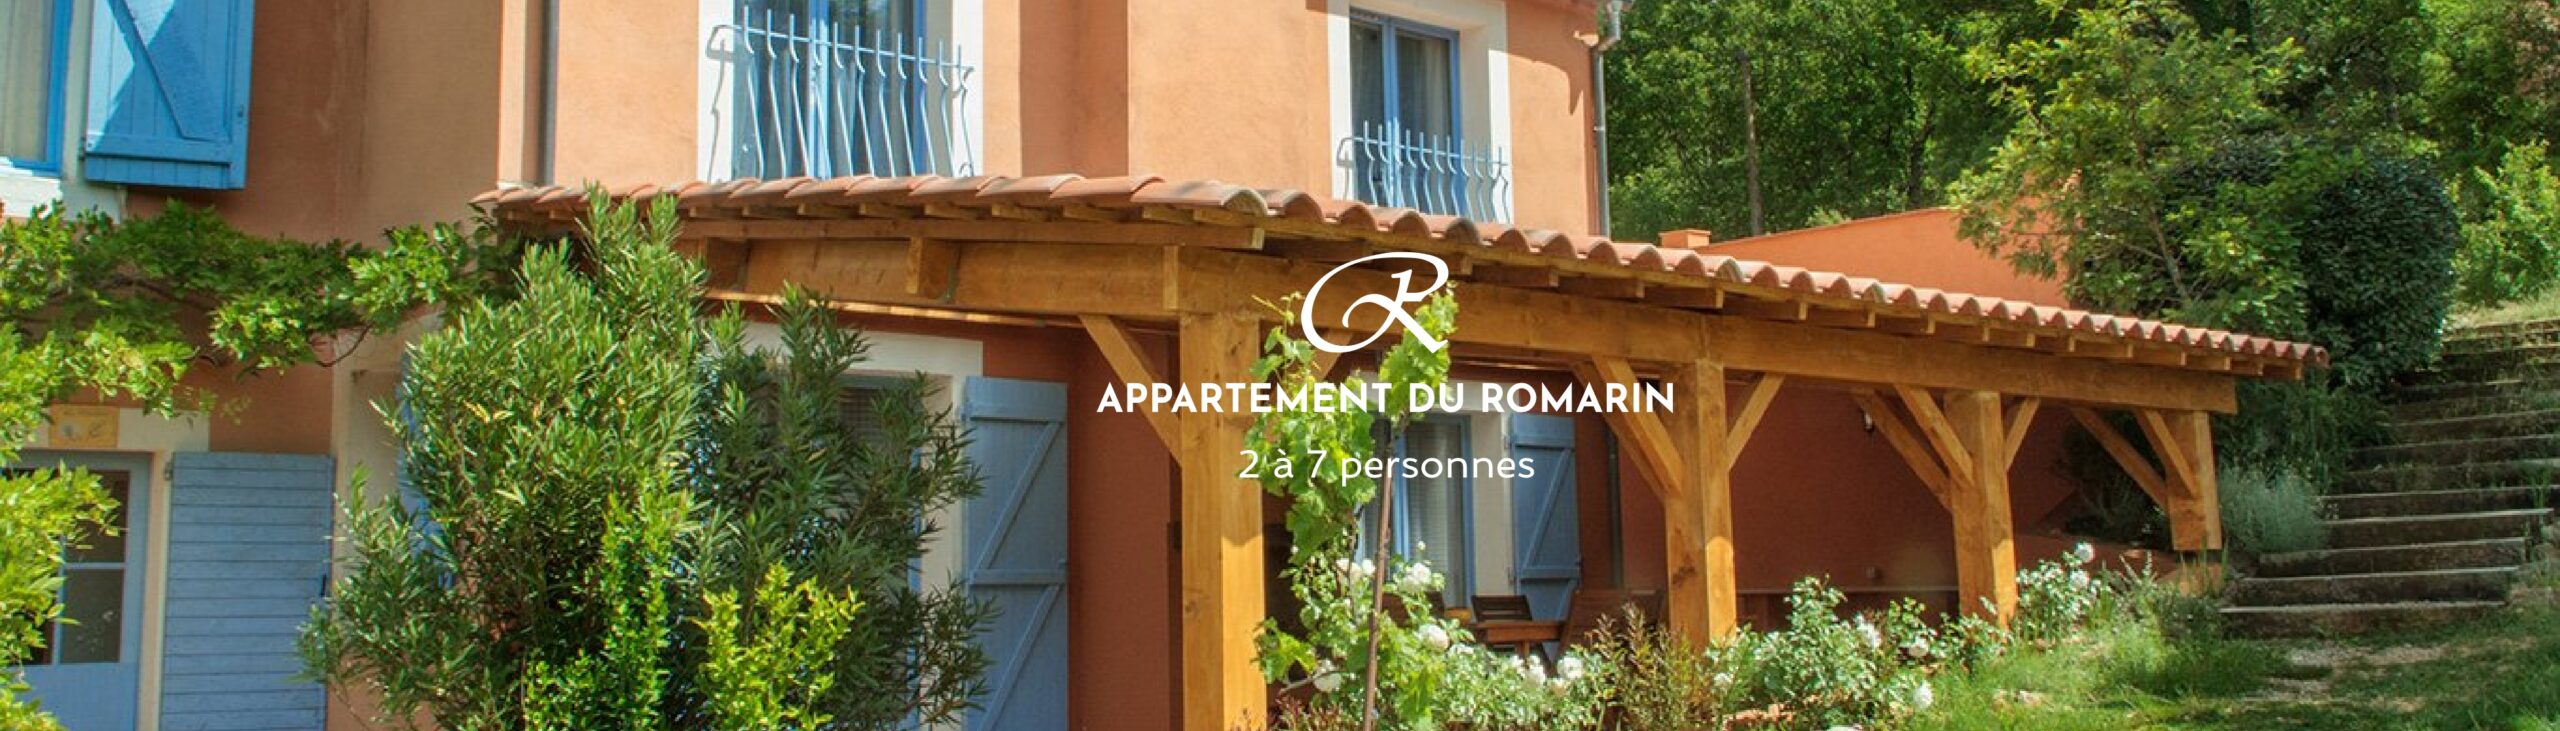 Appartement meublé 110 m2 en Provence - Appartement du Romarin jusqu'à 7 couchages, situé à quelques minutes de Saint Tropez